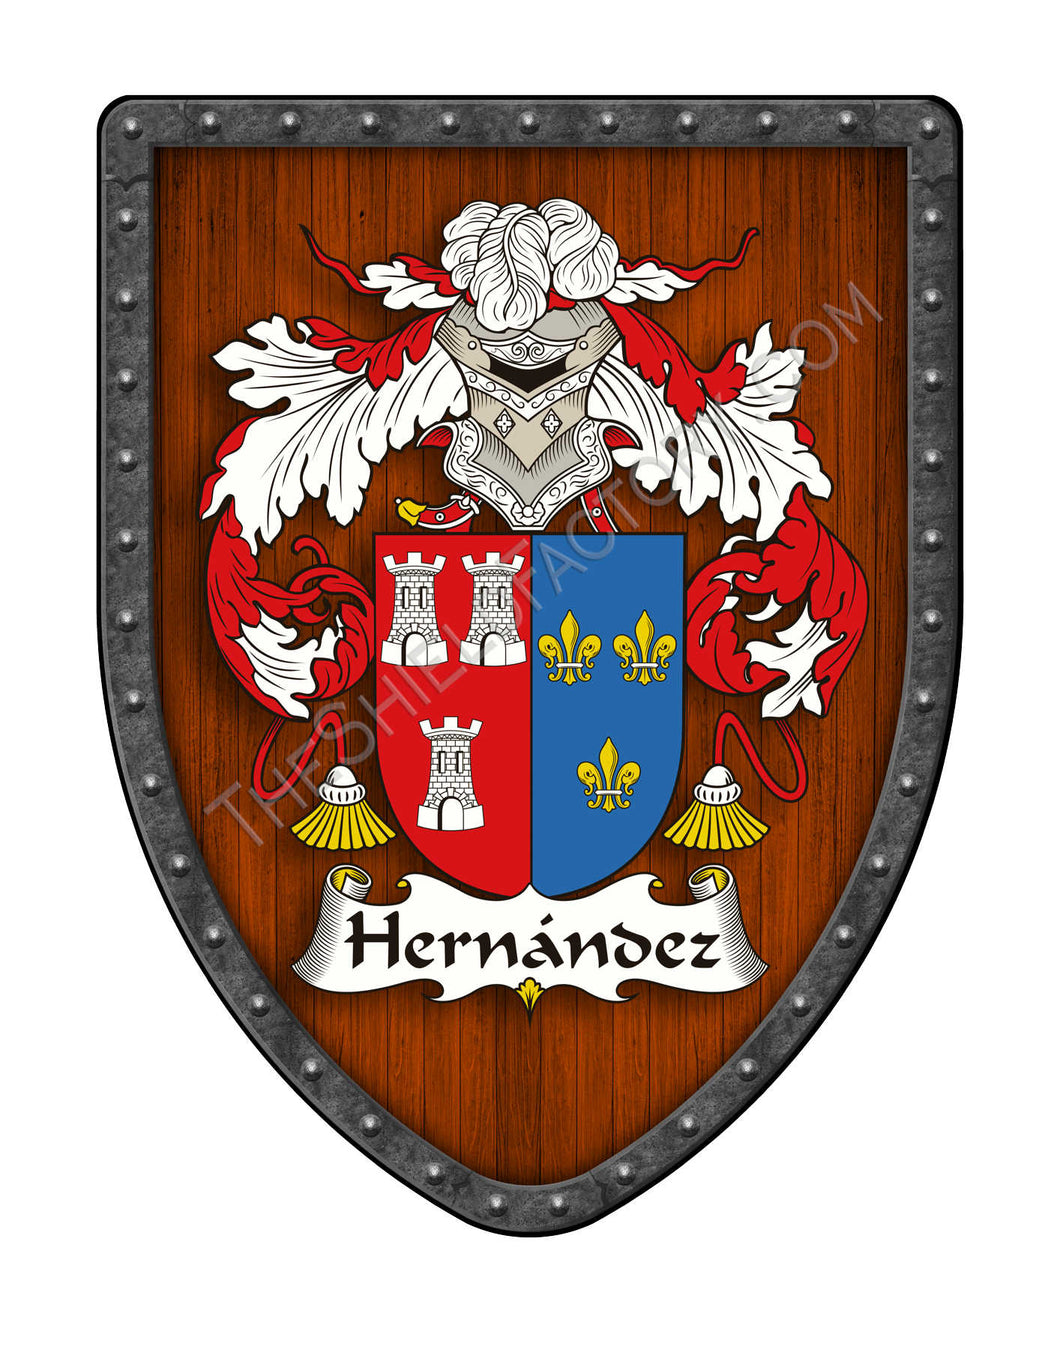 Hernández II